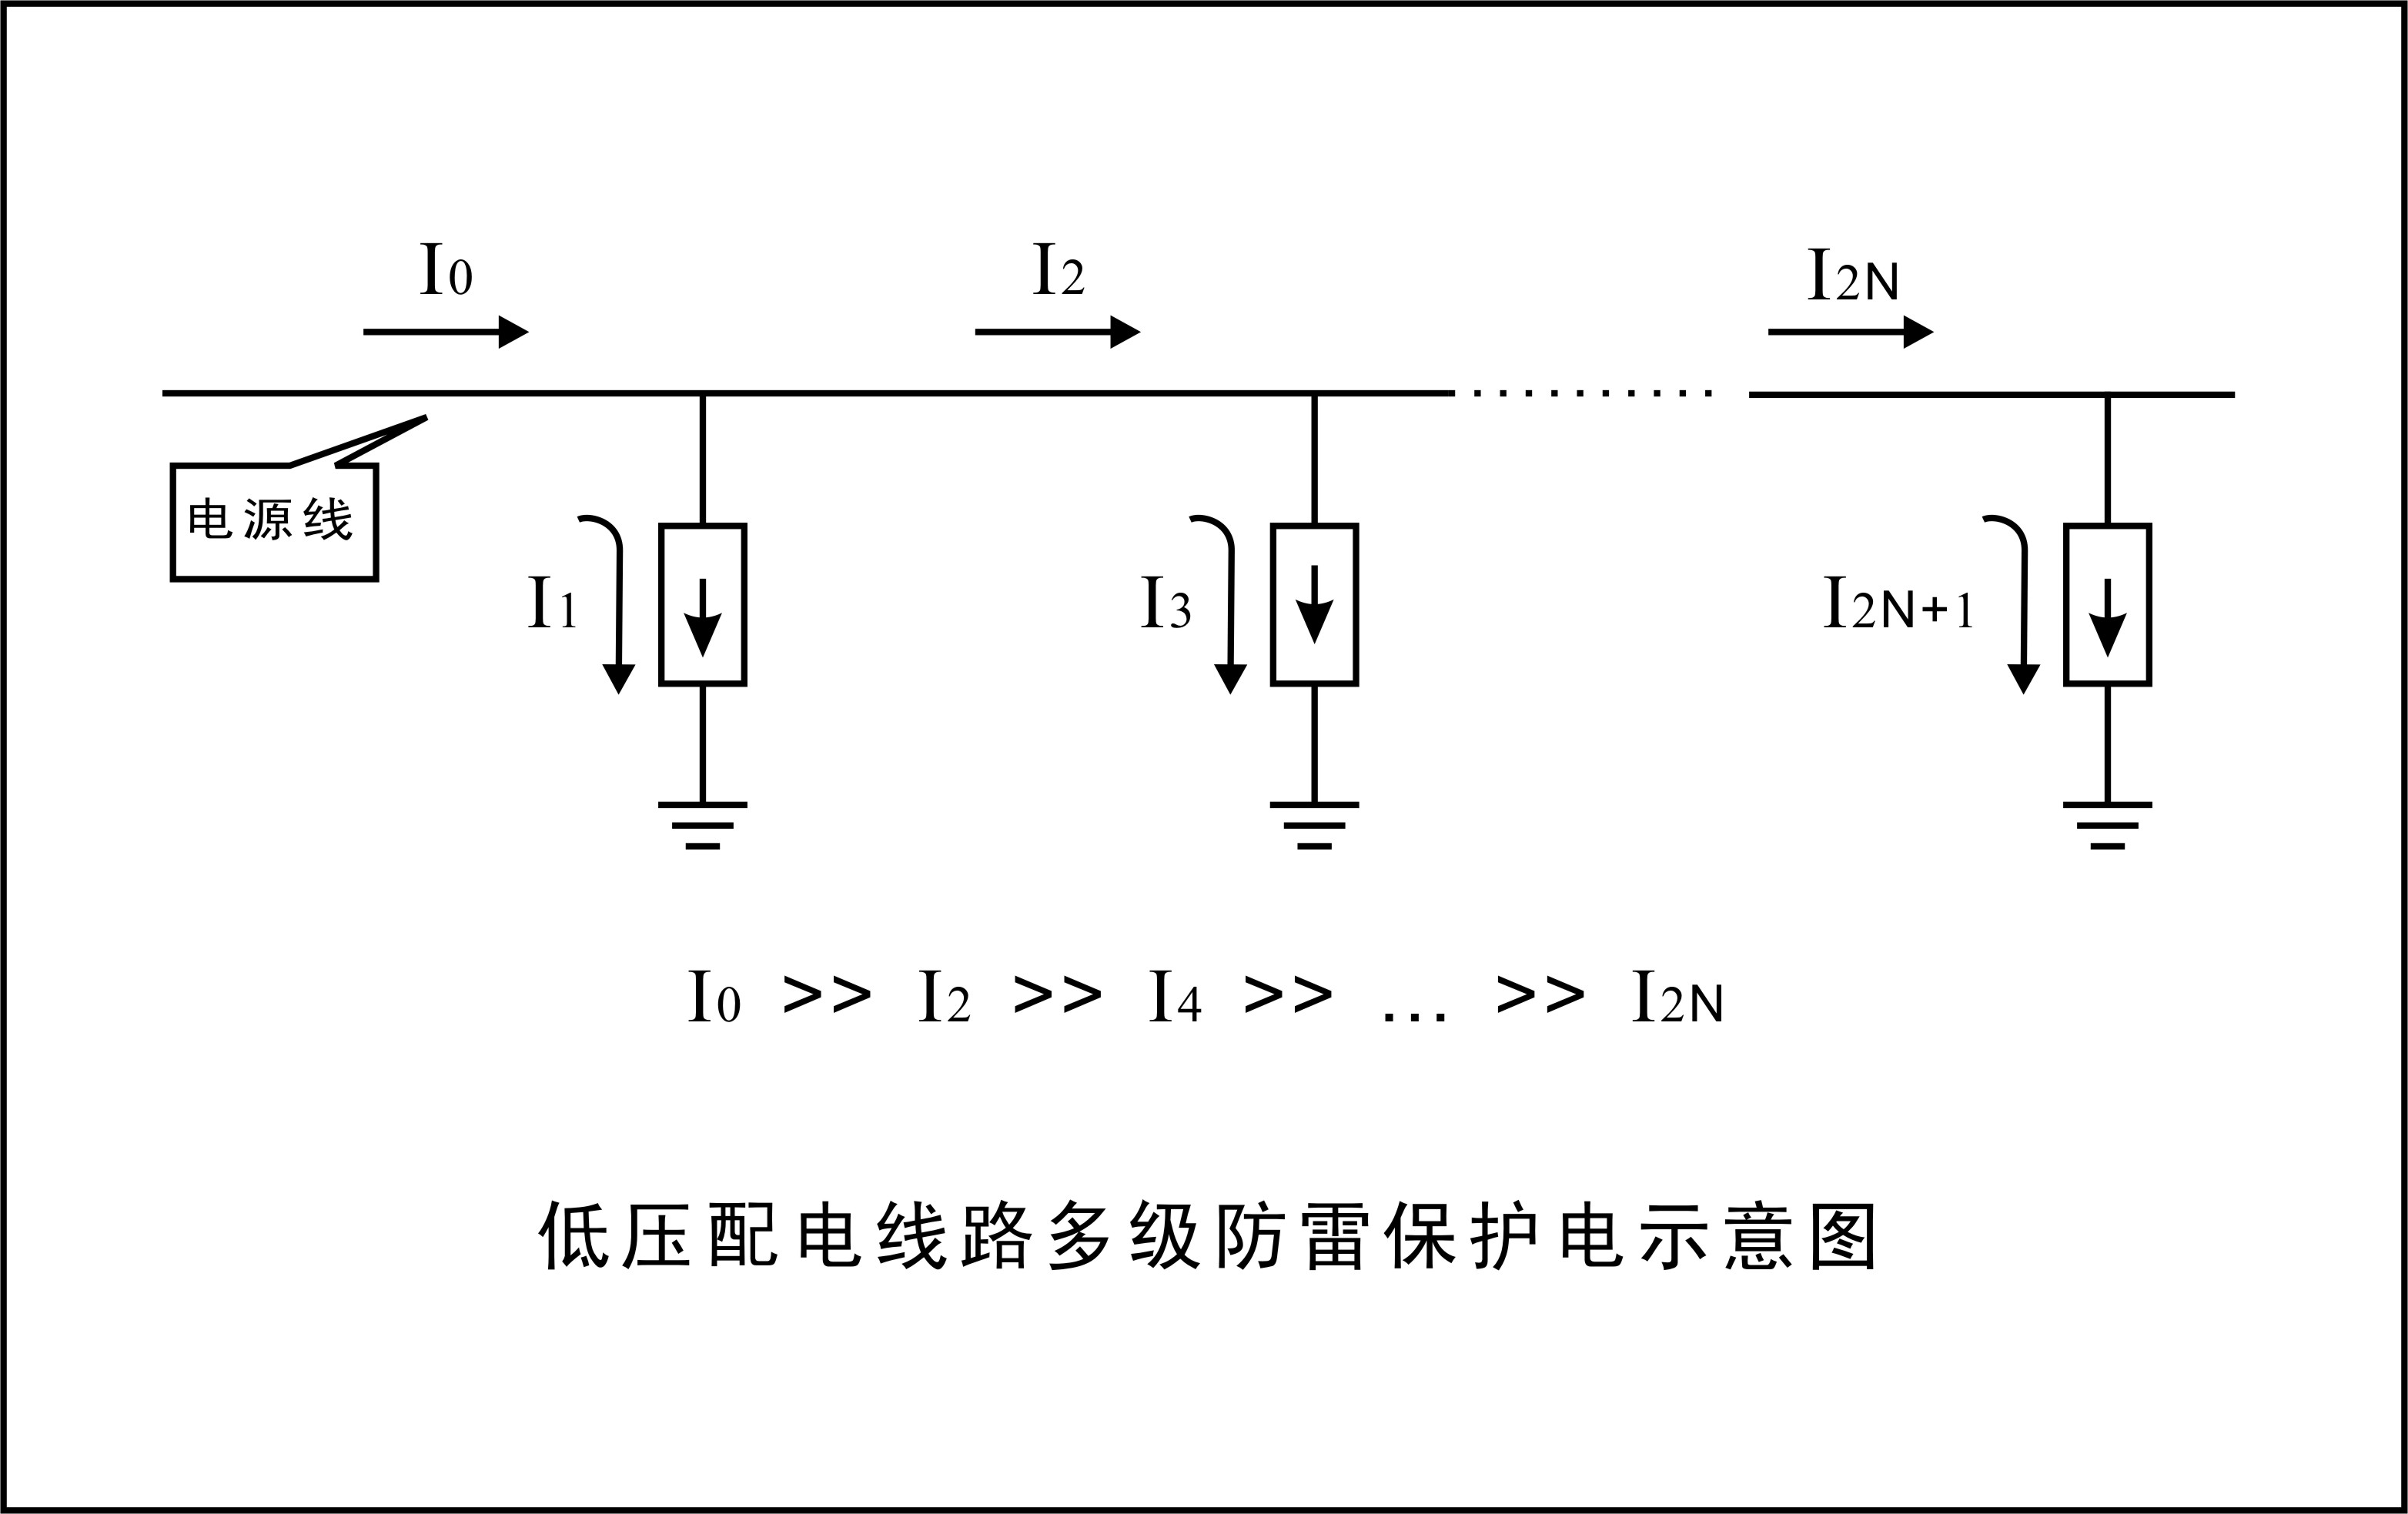 兆复安电气介绍低压成套配电系统防雷方案